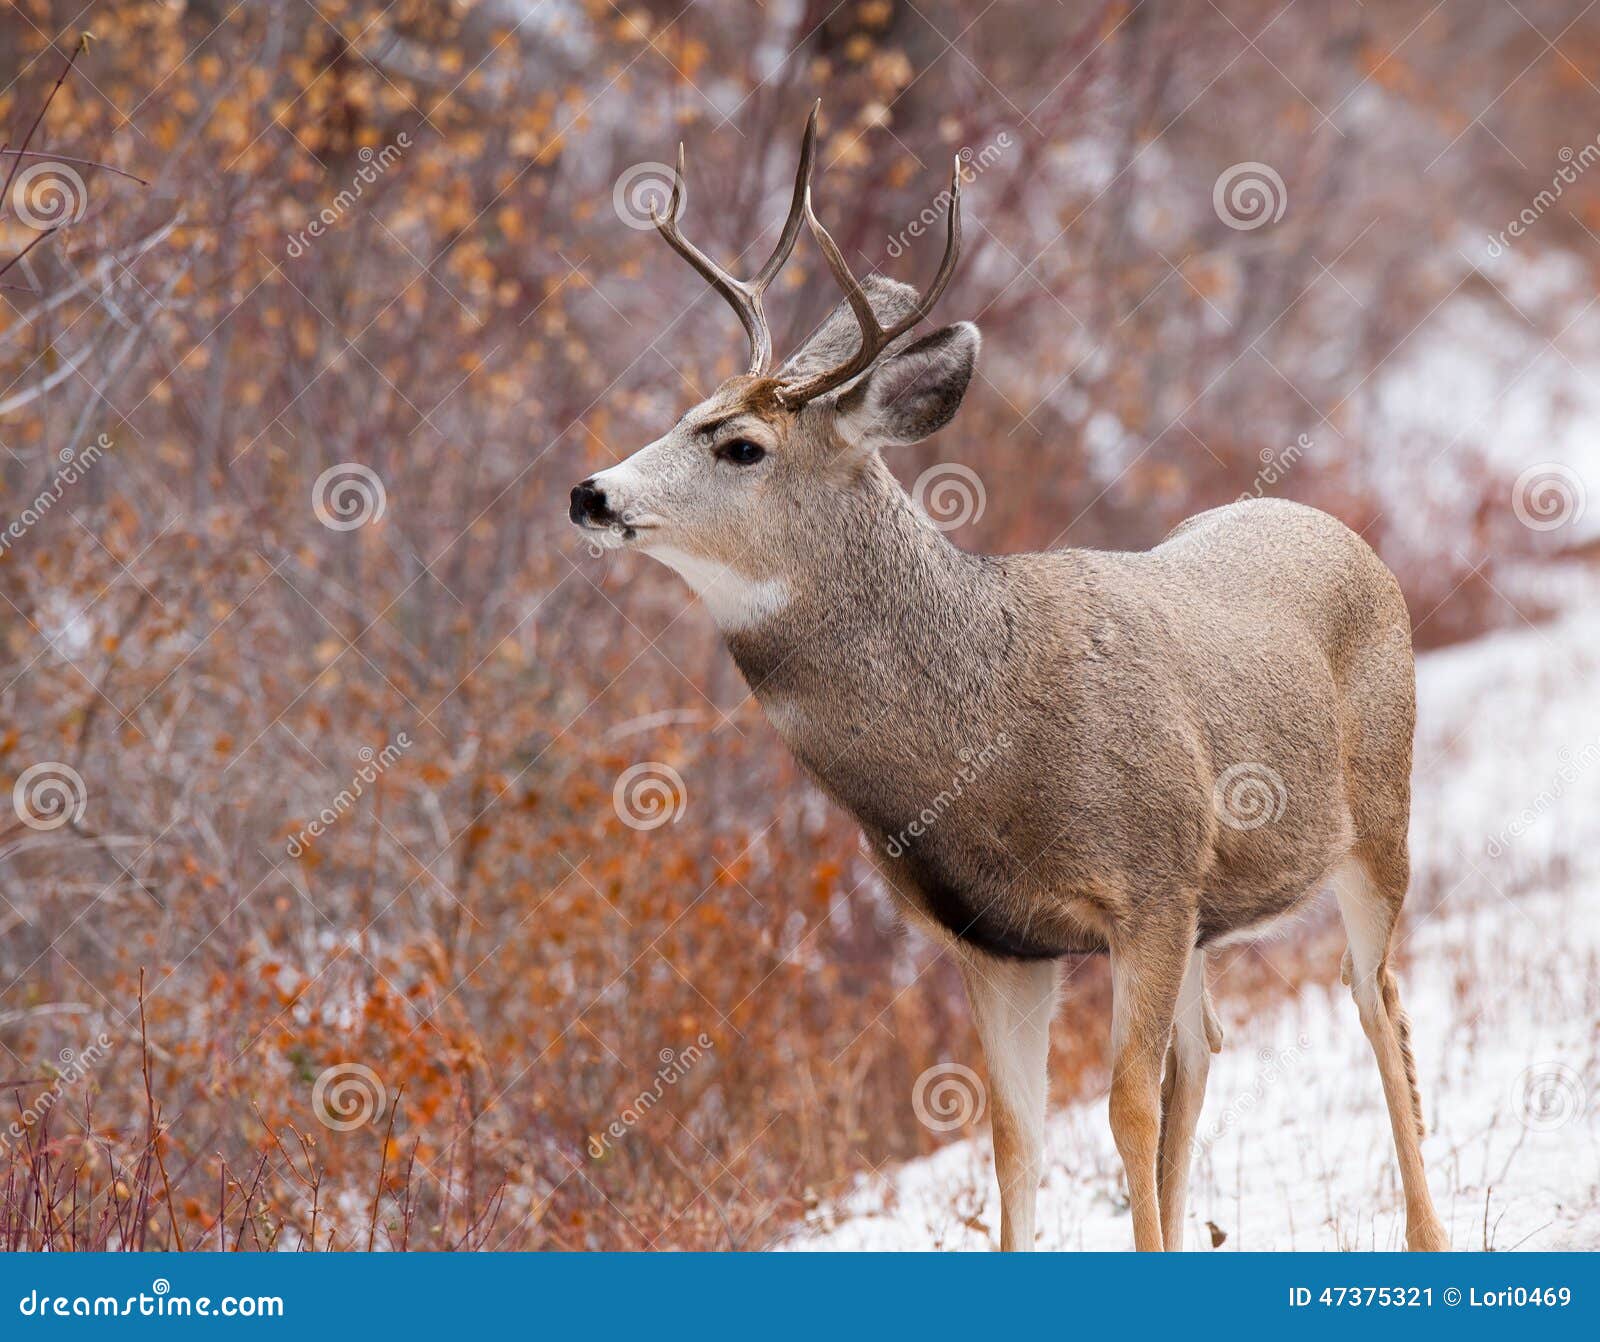 Mule Deer Buck Looking To Right Stock Image - Image of antlers, deer ...